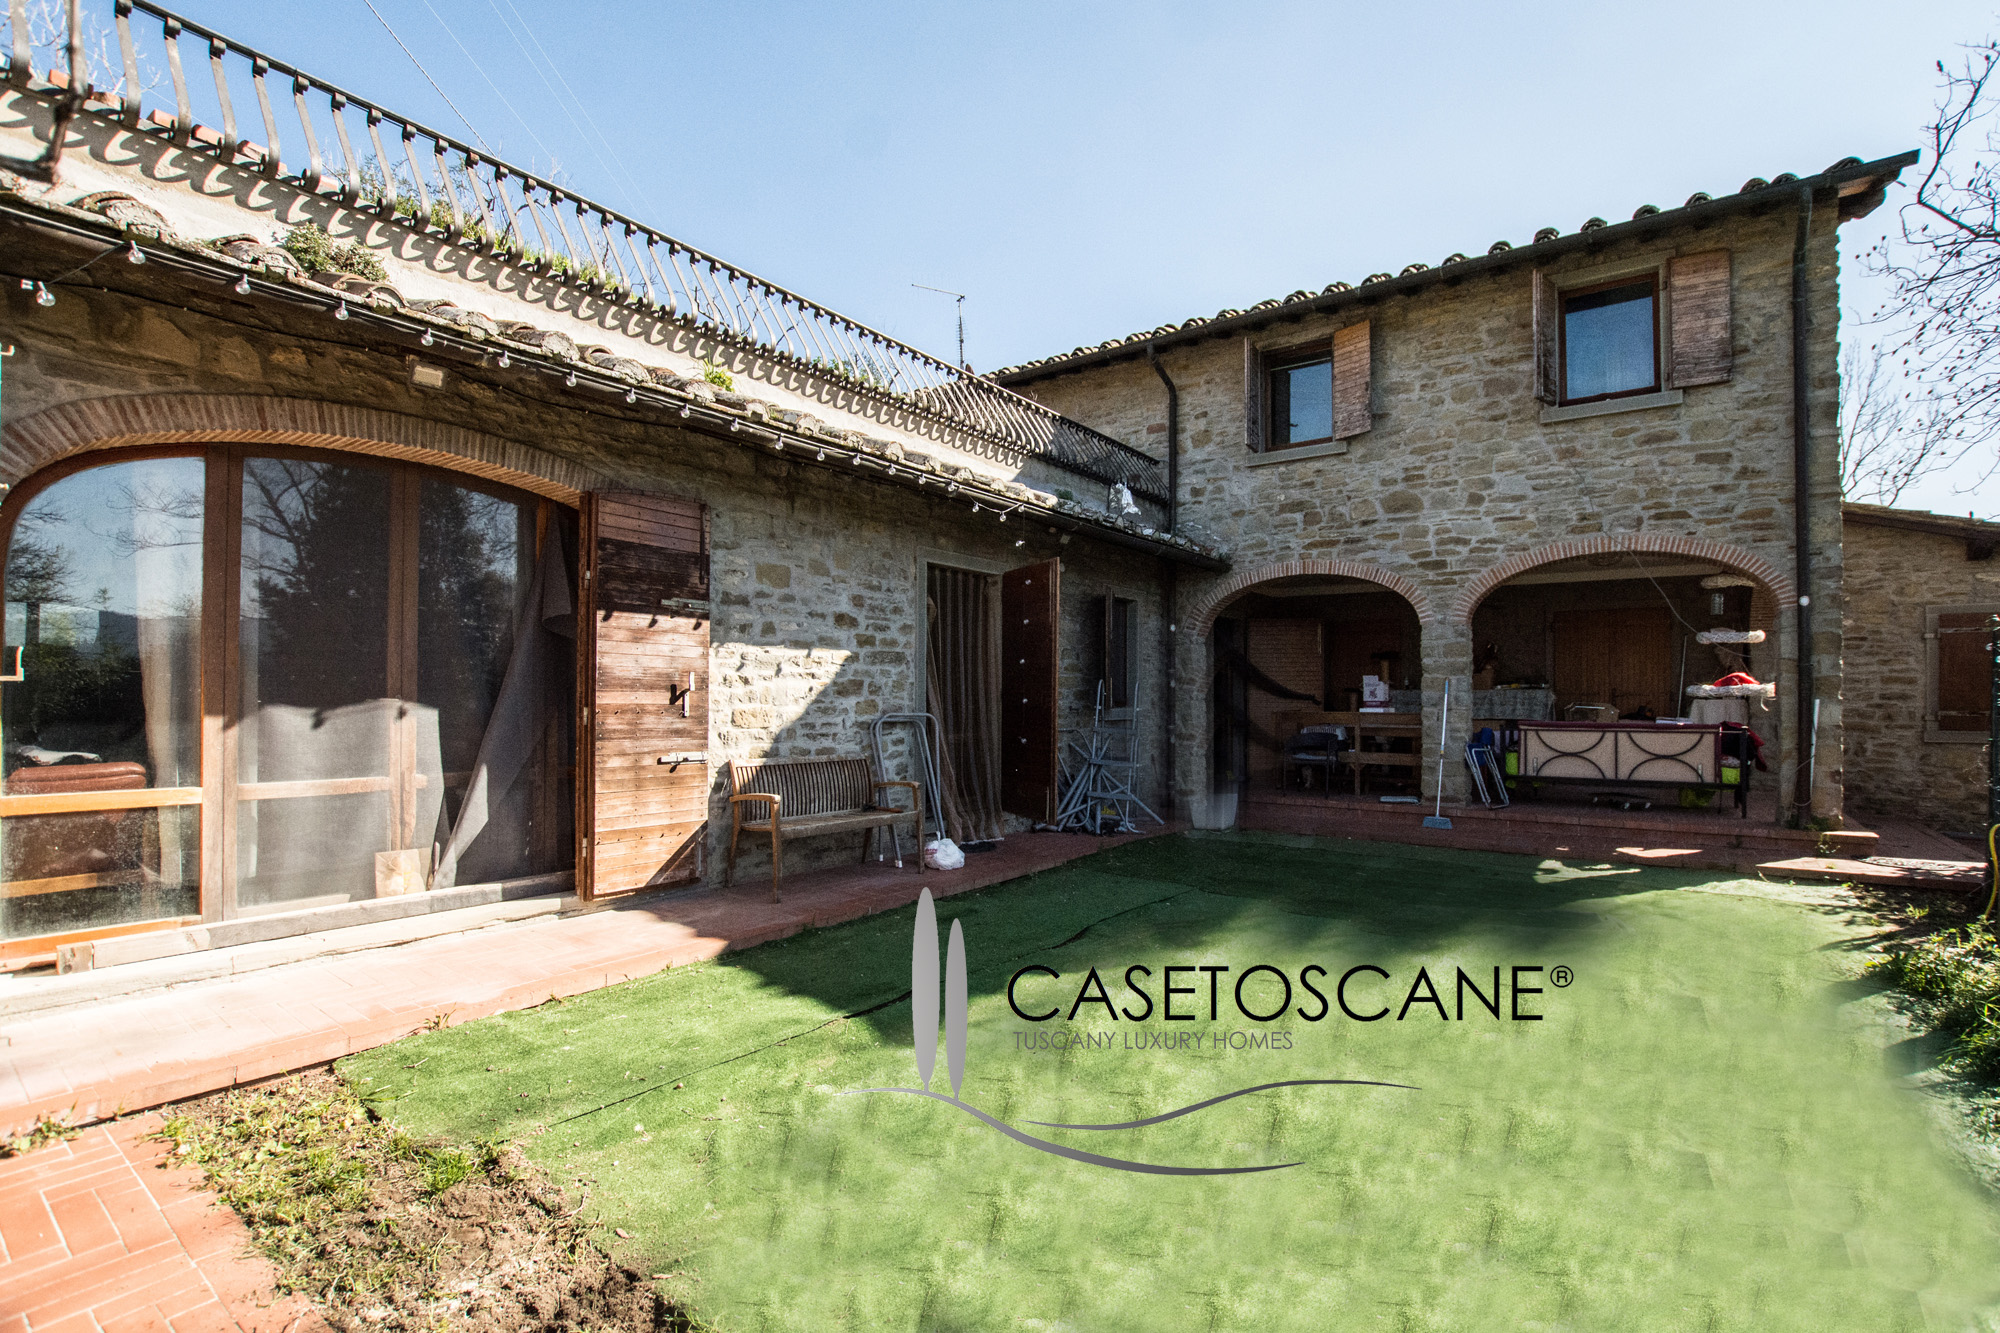 S256 - Casale in pietra di circa mq.300 in condizioni già abitabili, con terreno di mq.5.500. Panoramico nelle colline a 5' da Arezzo.